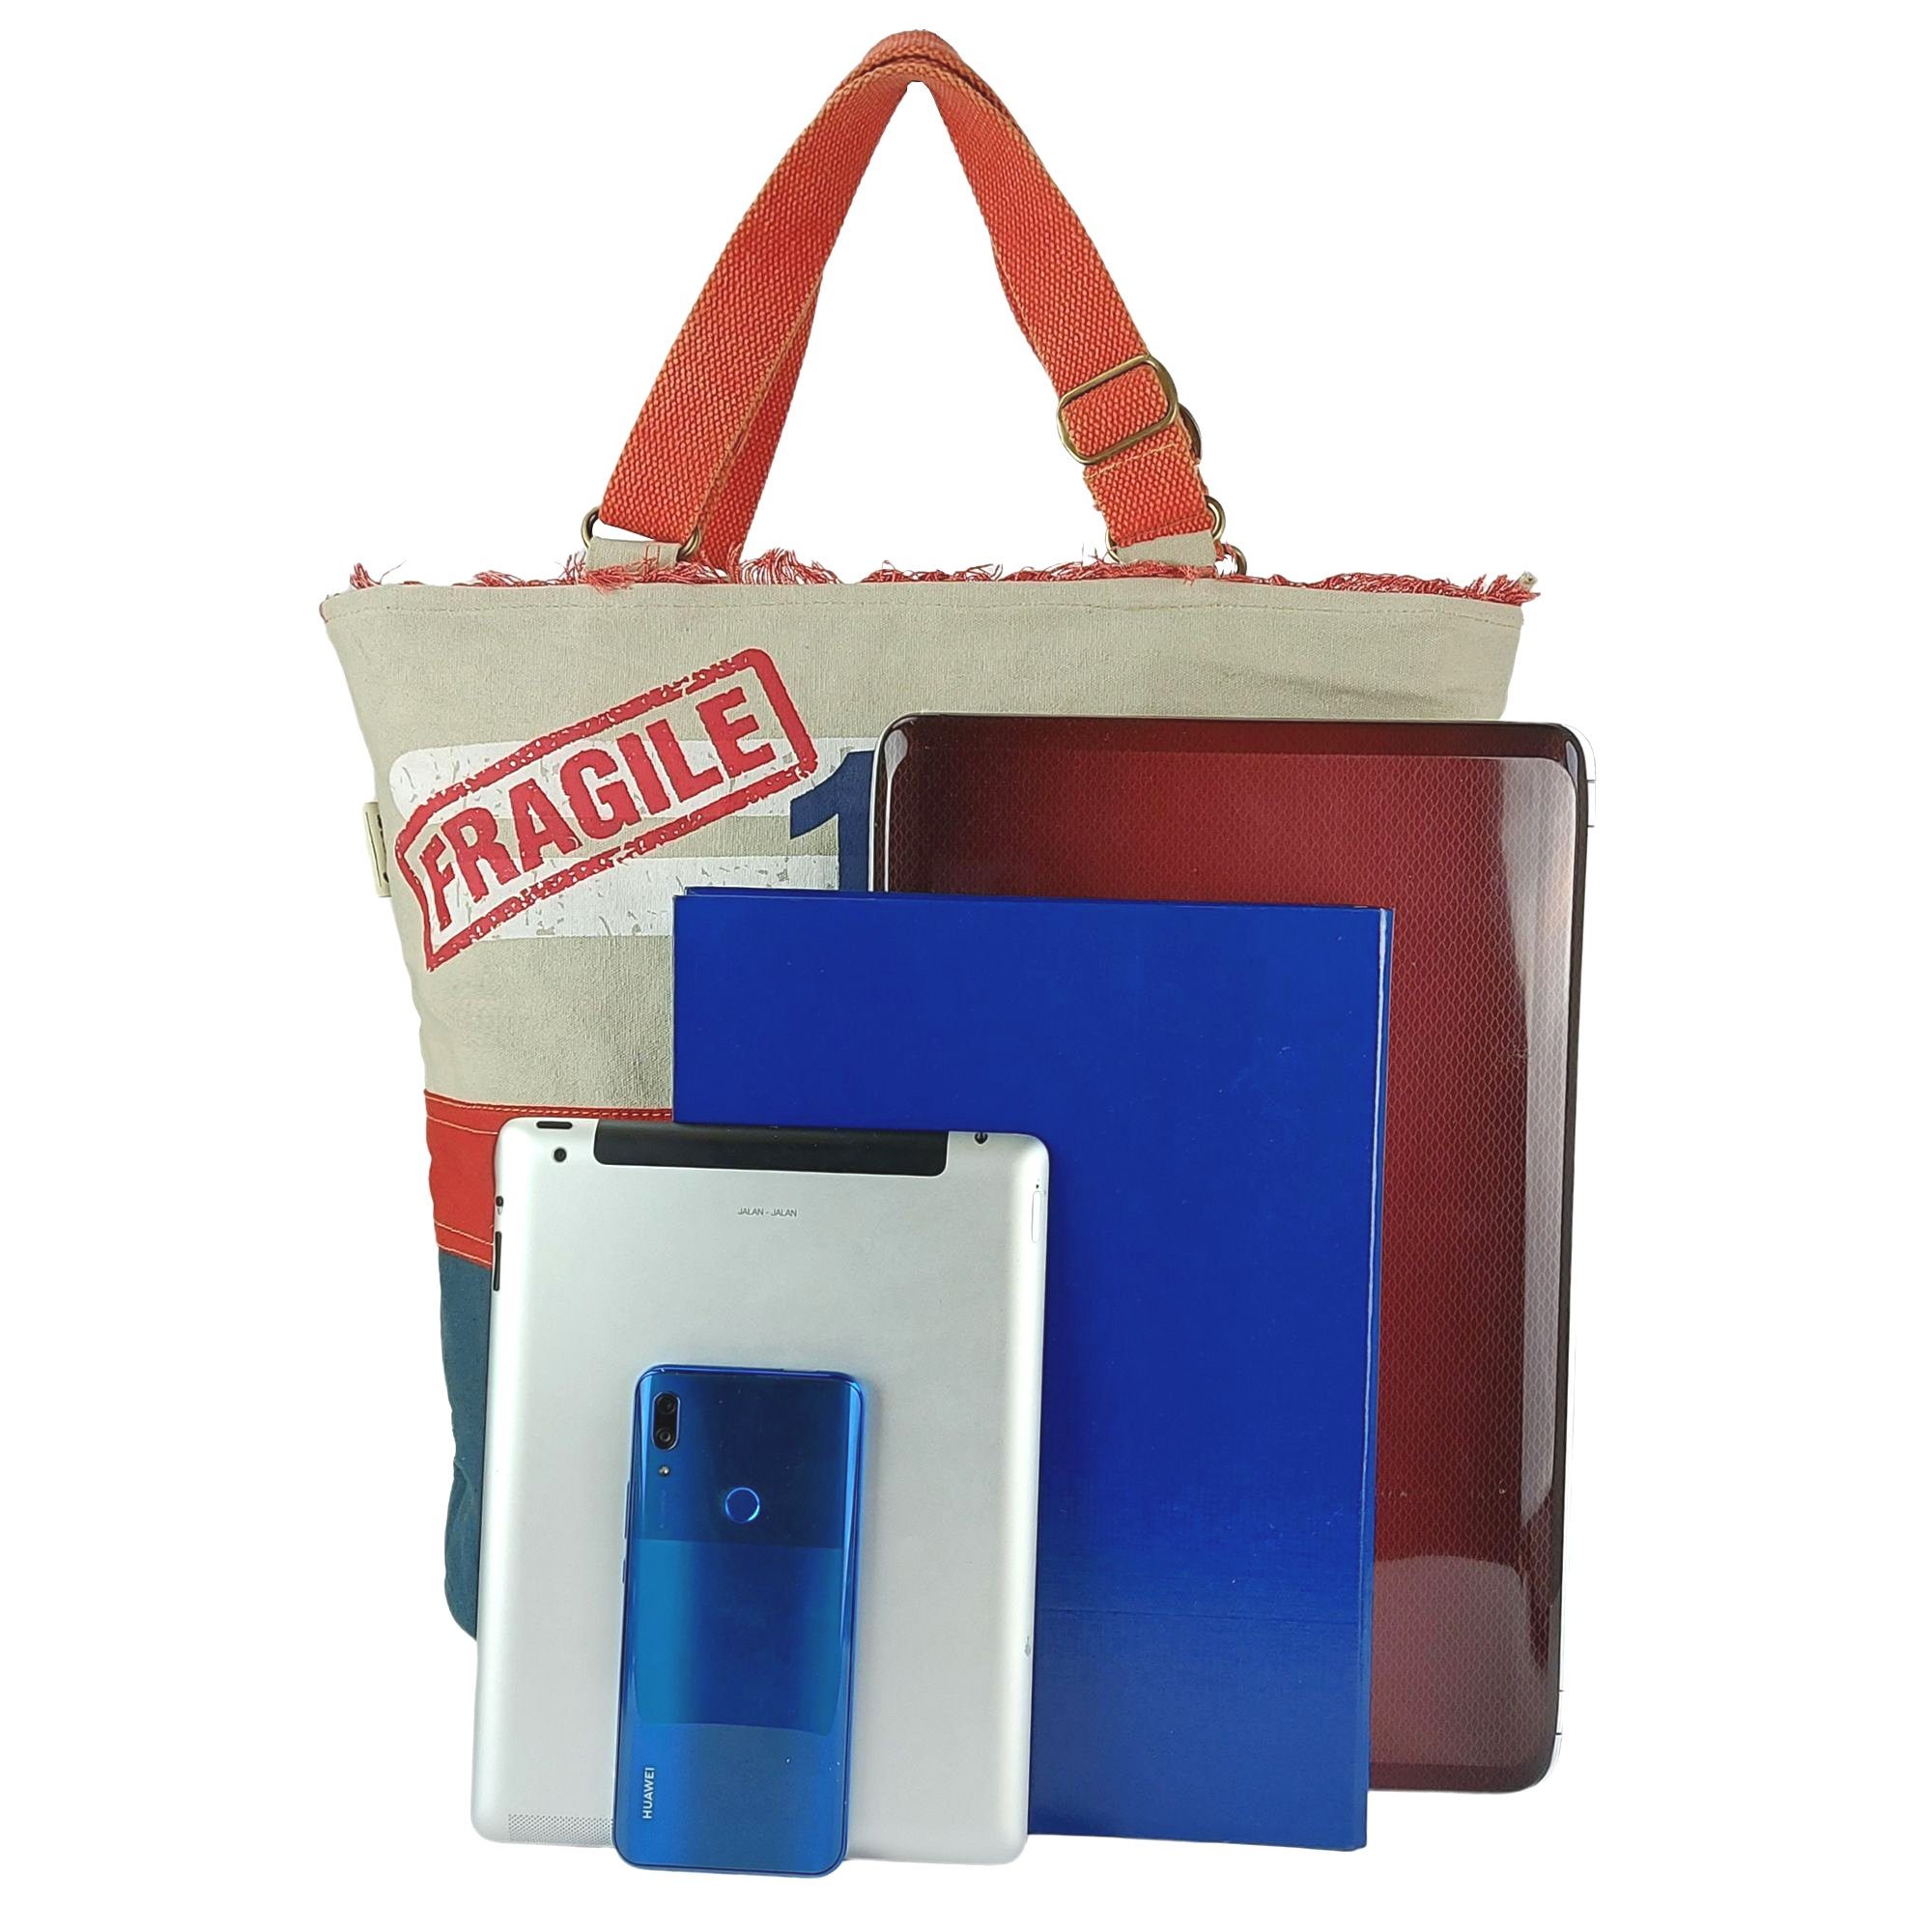 Handtasche Schultertasche, Blau/beige/rot Damen Handtasche, Sunsa Strandtasche XXL Vintage Canvas